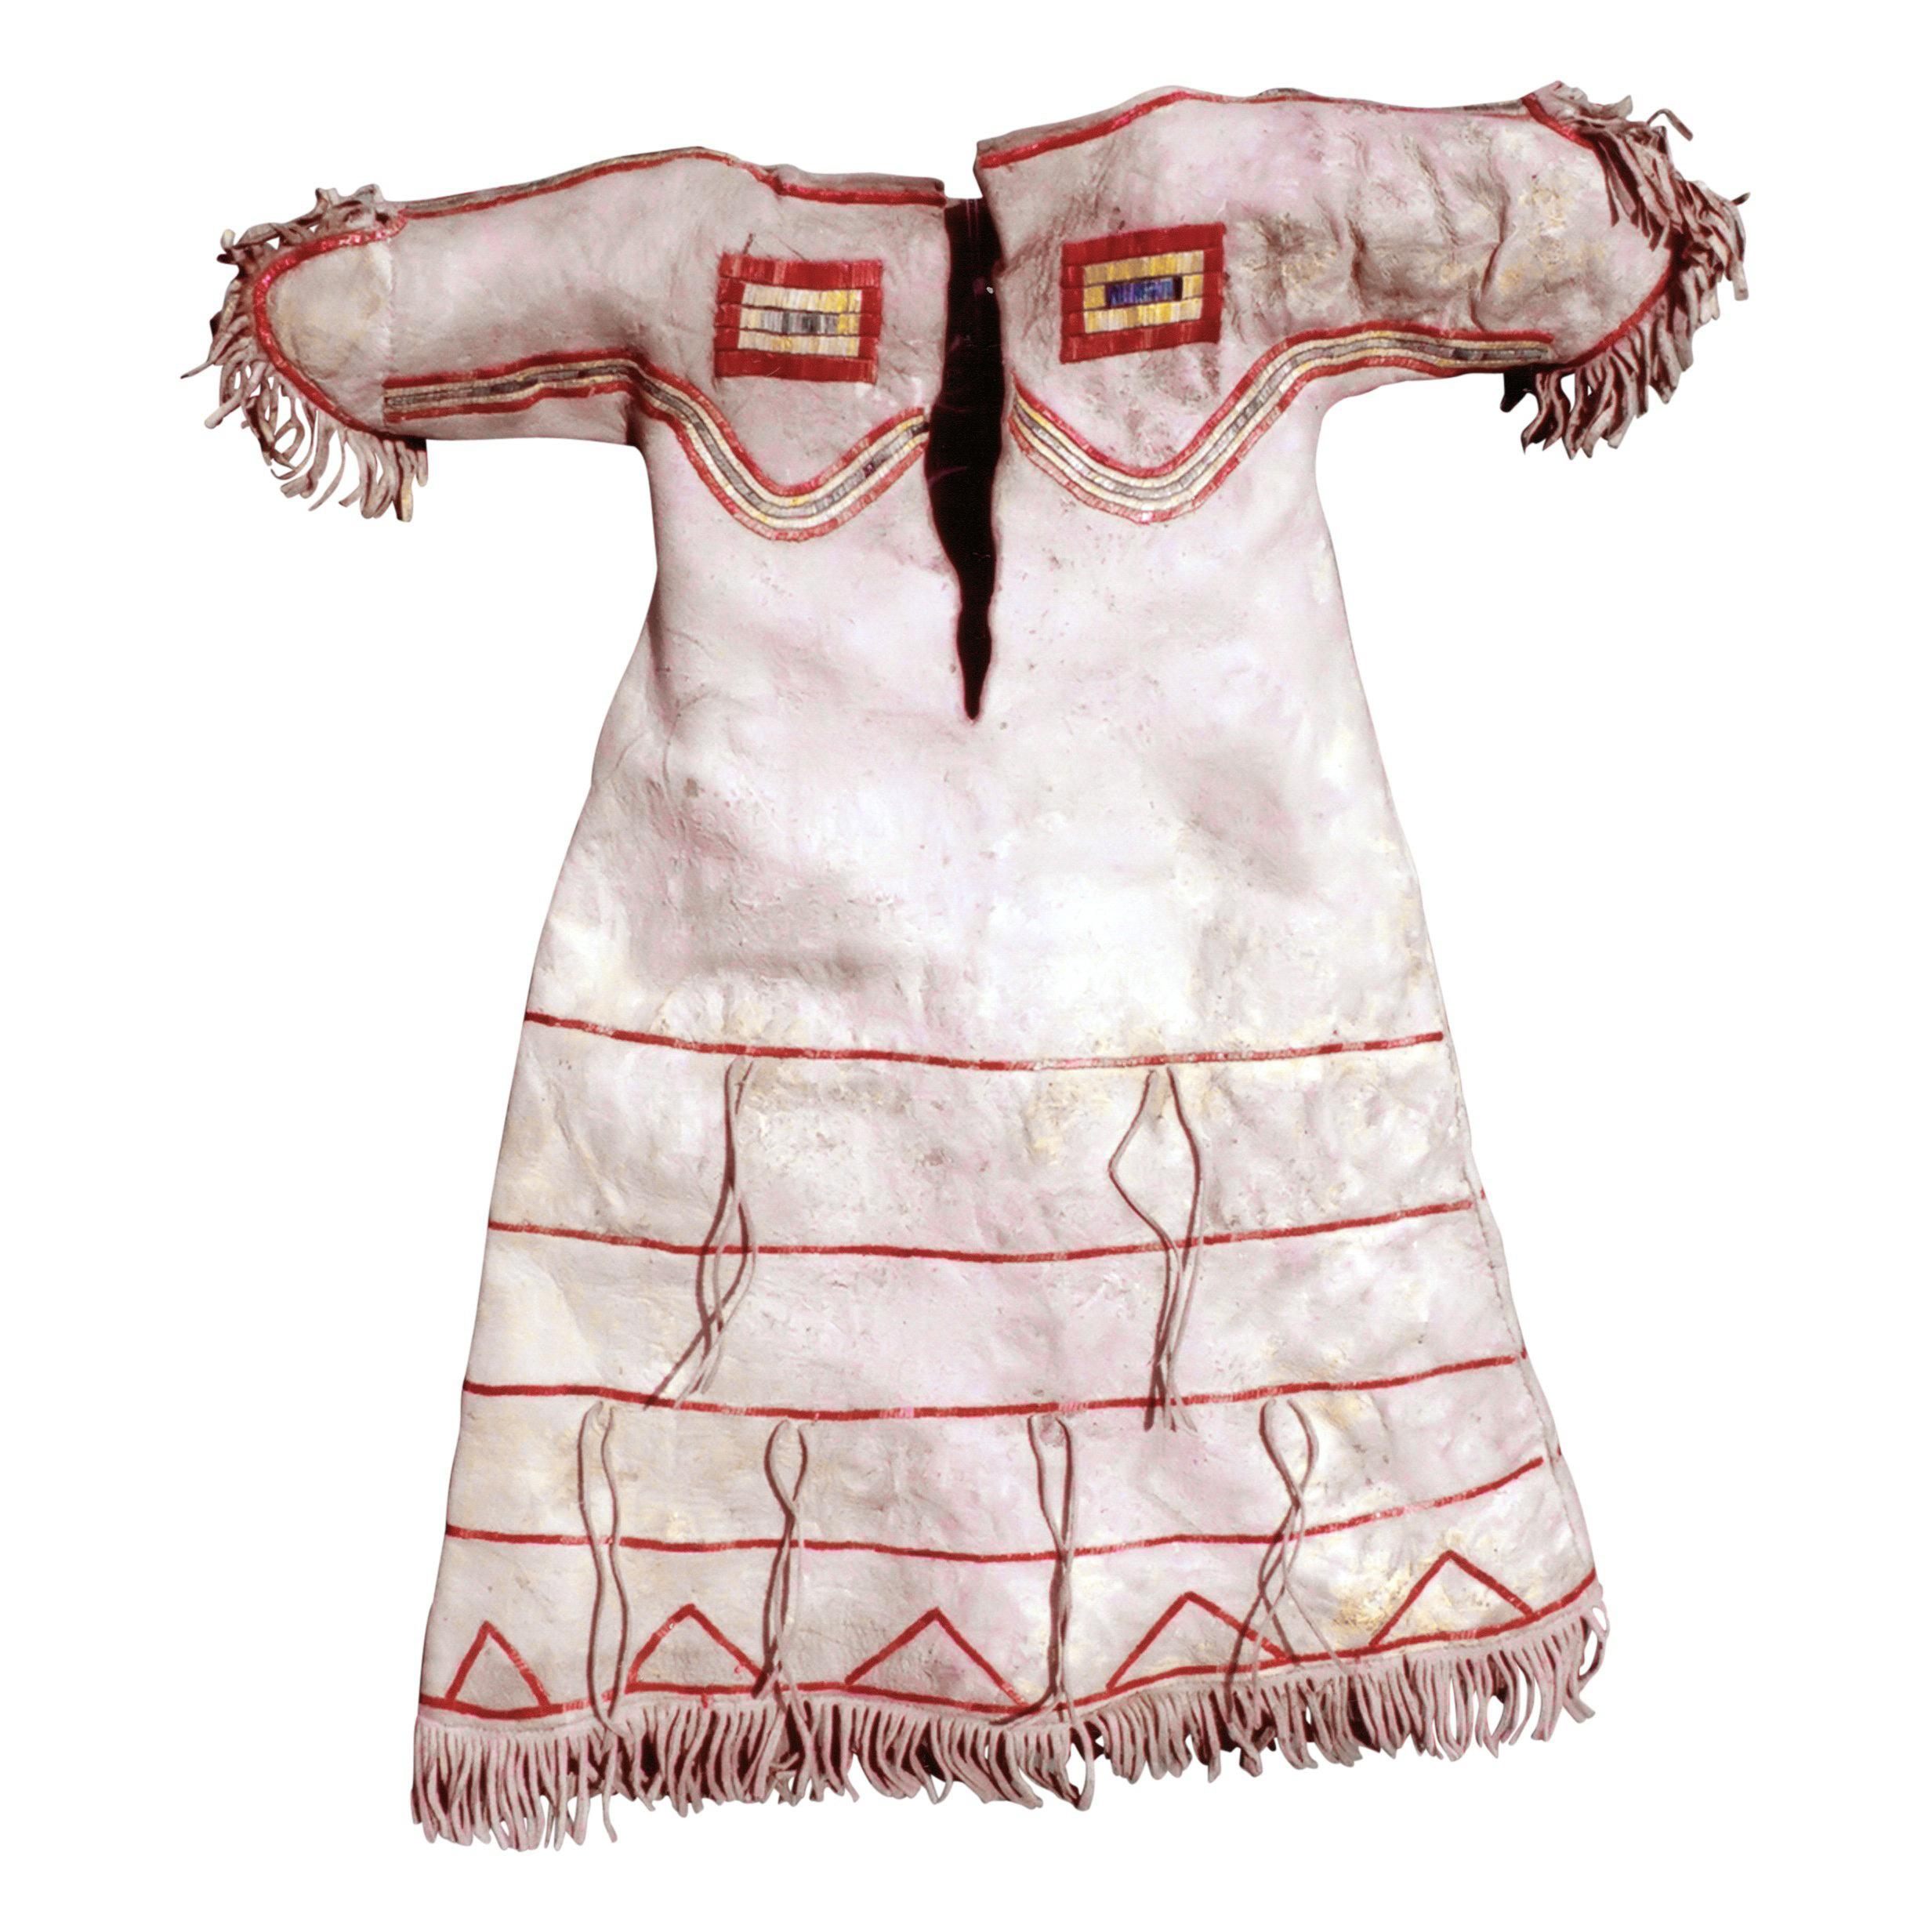 Robe d'enfant sioux Lakota piquée sur peau de bison ; collectée et entrée à l'Académie des arts et des sciences du Maryland avant 1880. Il a été cédé par le musée en 1968 à H. Bruce Greene, alors conservateur du musée.

Période : vers